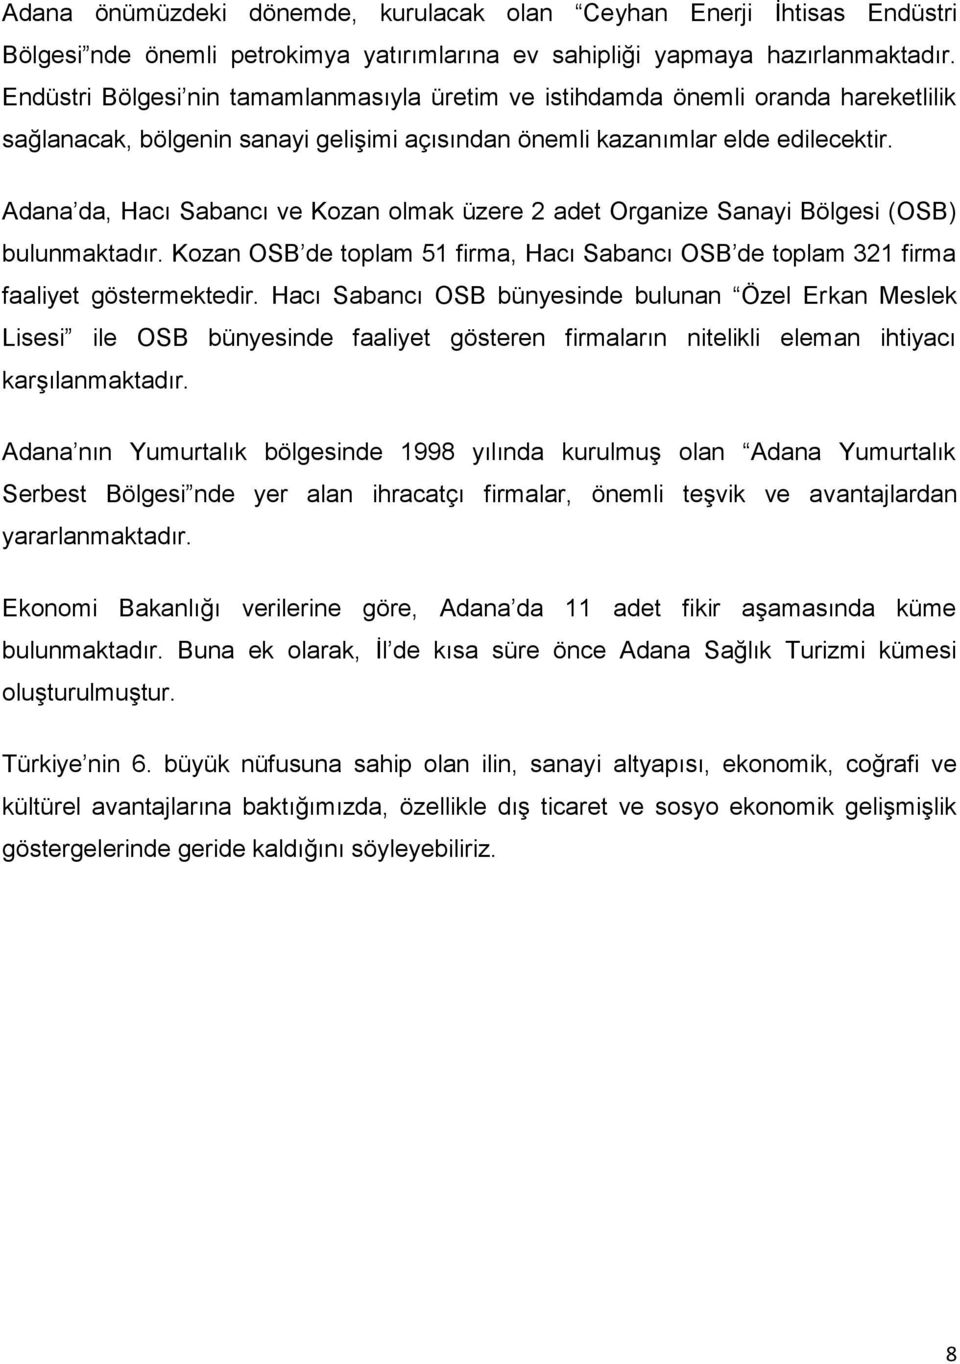 Adana da, Hacı Sabancı ve Kozan olmak üzere 2 adet Organize Sanayi Bölgesi (OSB) bulunmaktadır. Kozan OSB de toplam 51 firma, Hacı Sabancı OSB de toplam 321 firma faaliyet göstermektedir.